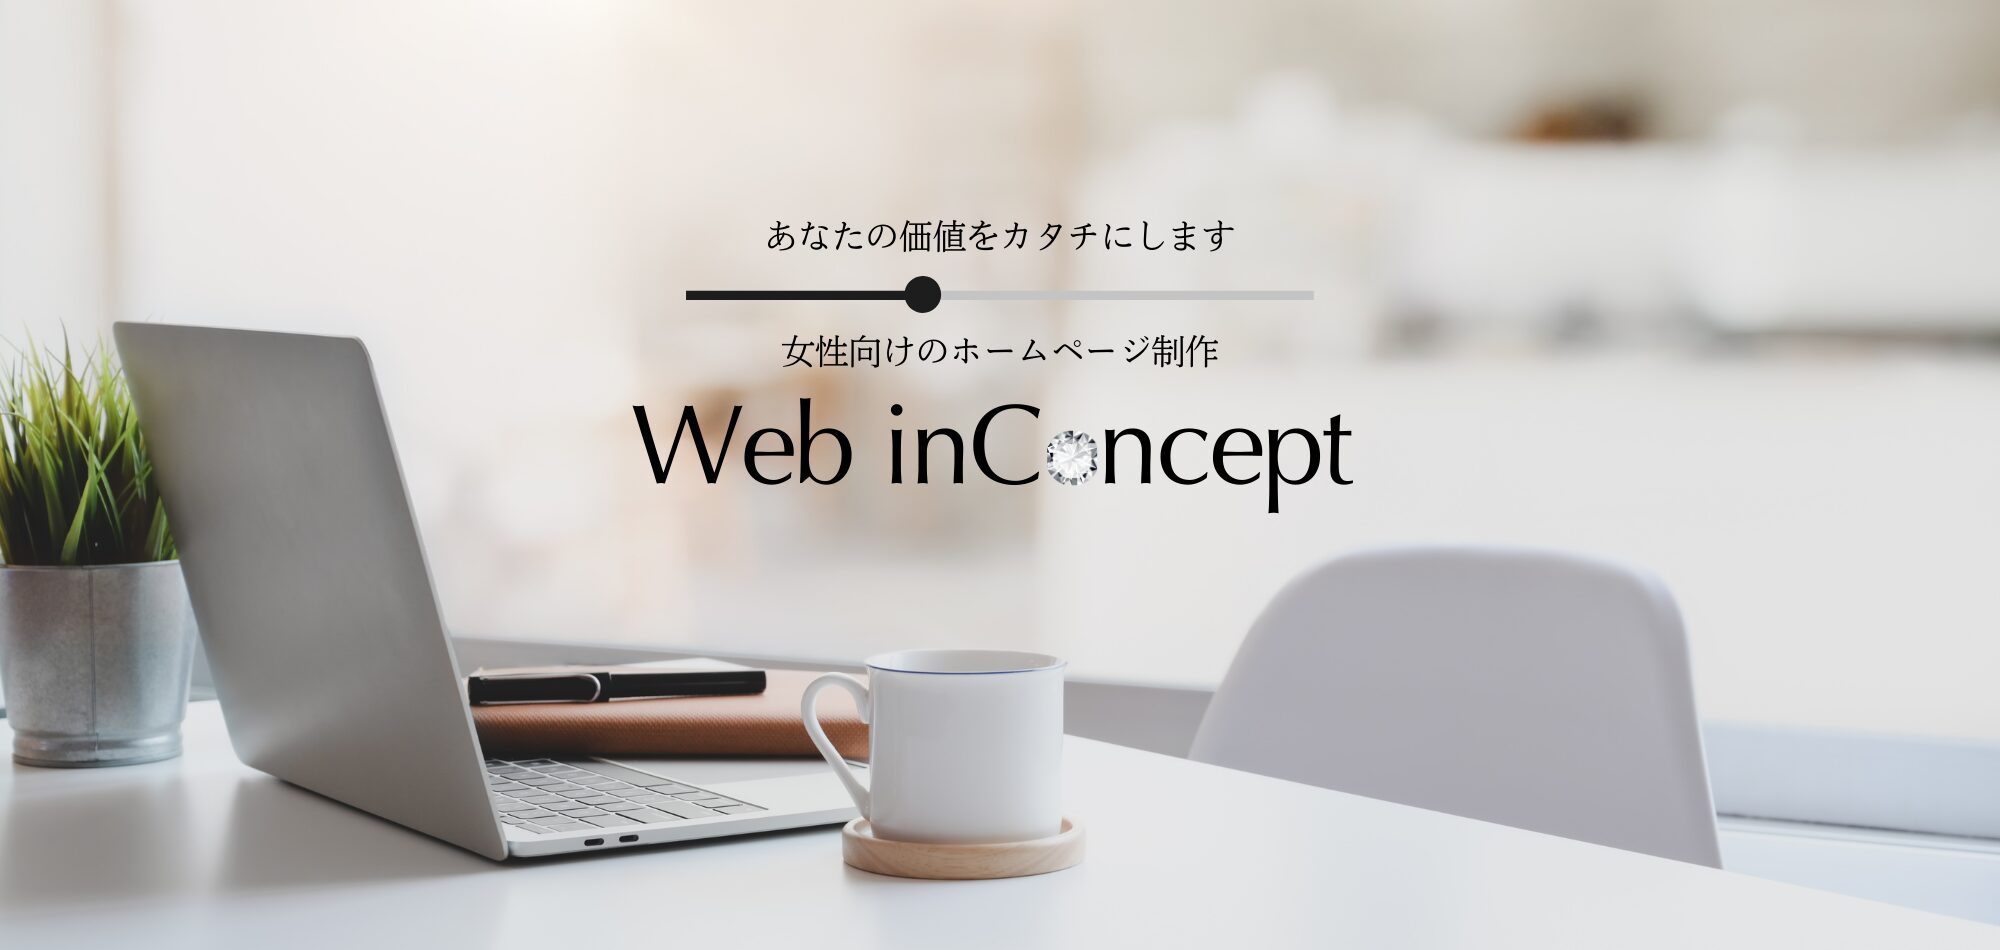 web-inconcept-top